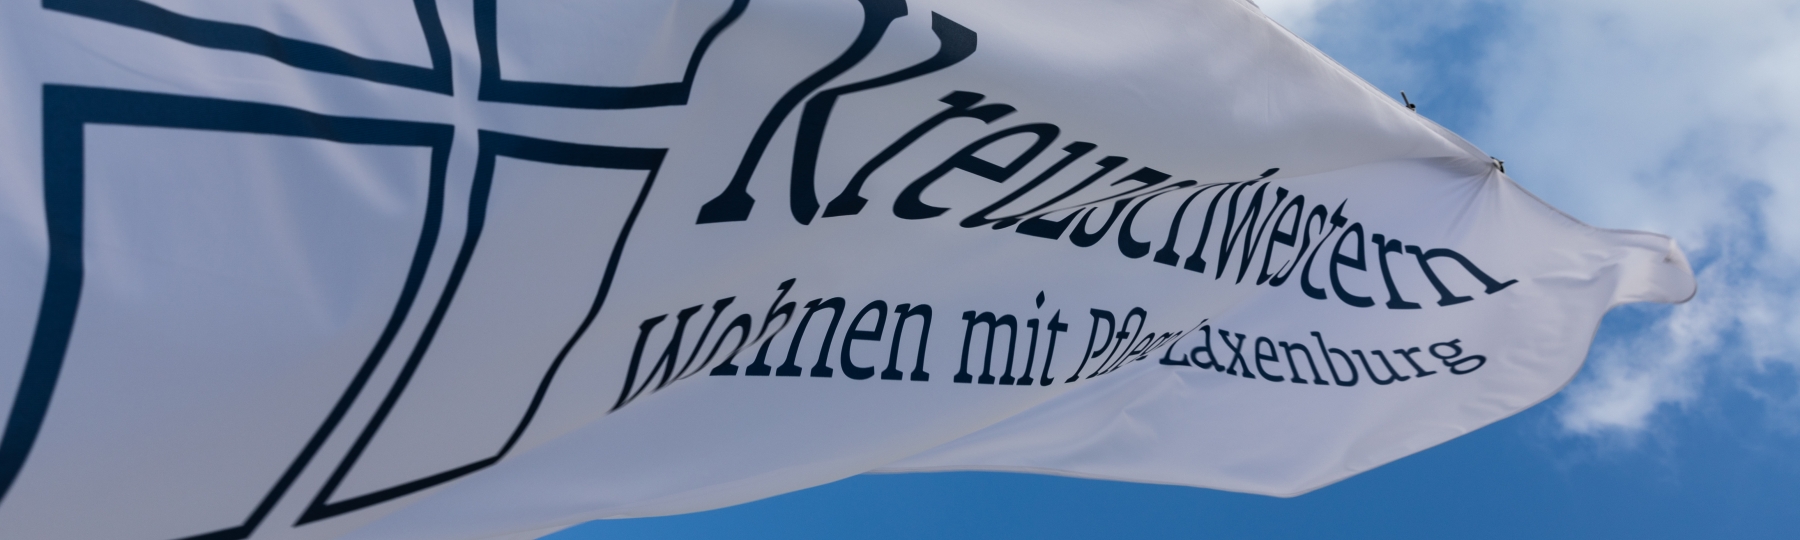 Laxenburg - Kontakt - Fahne mit Kreuzschwestern Logo